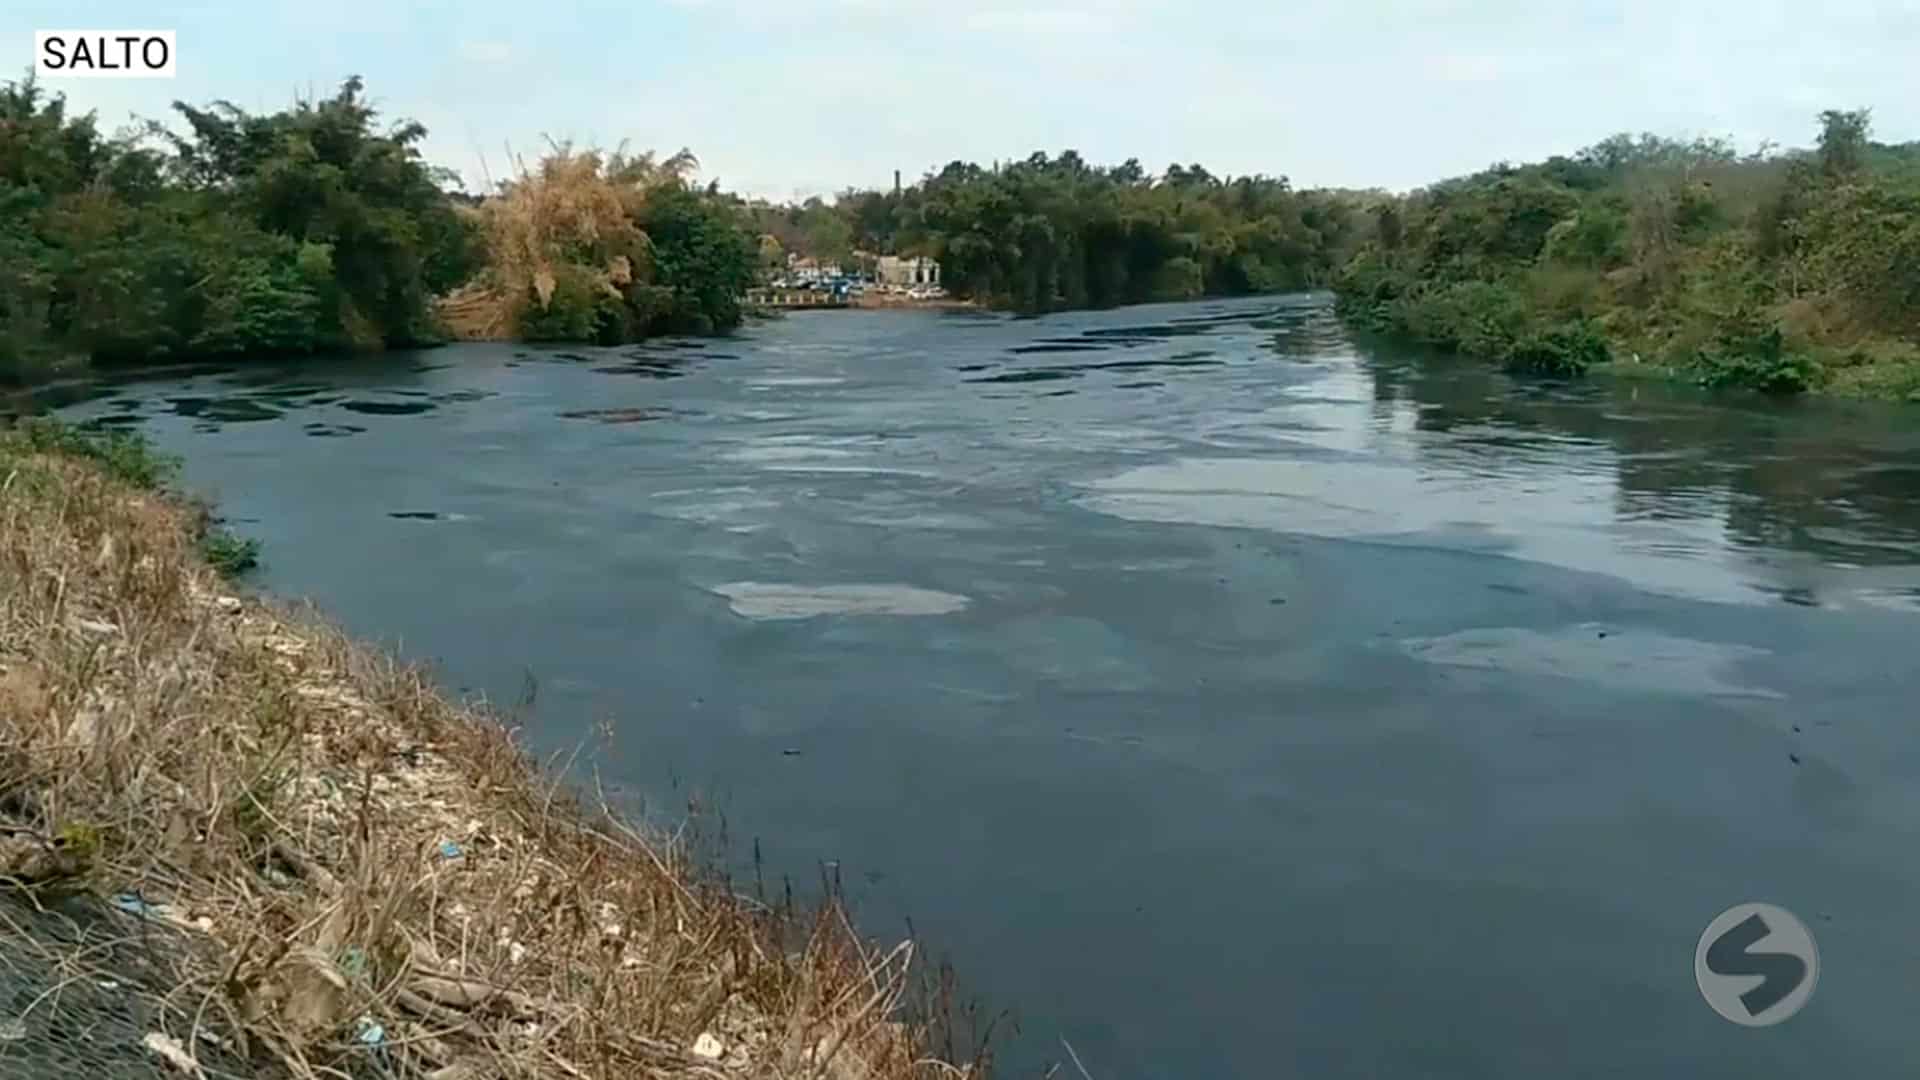 Poluição deixa água do rio Tietê escura em Salto